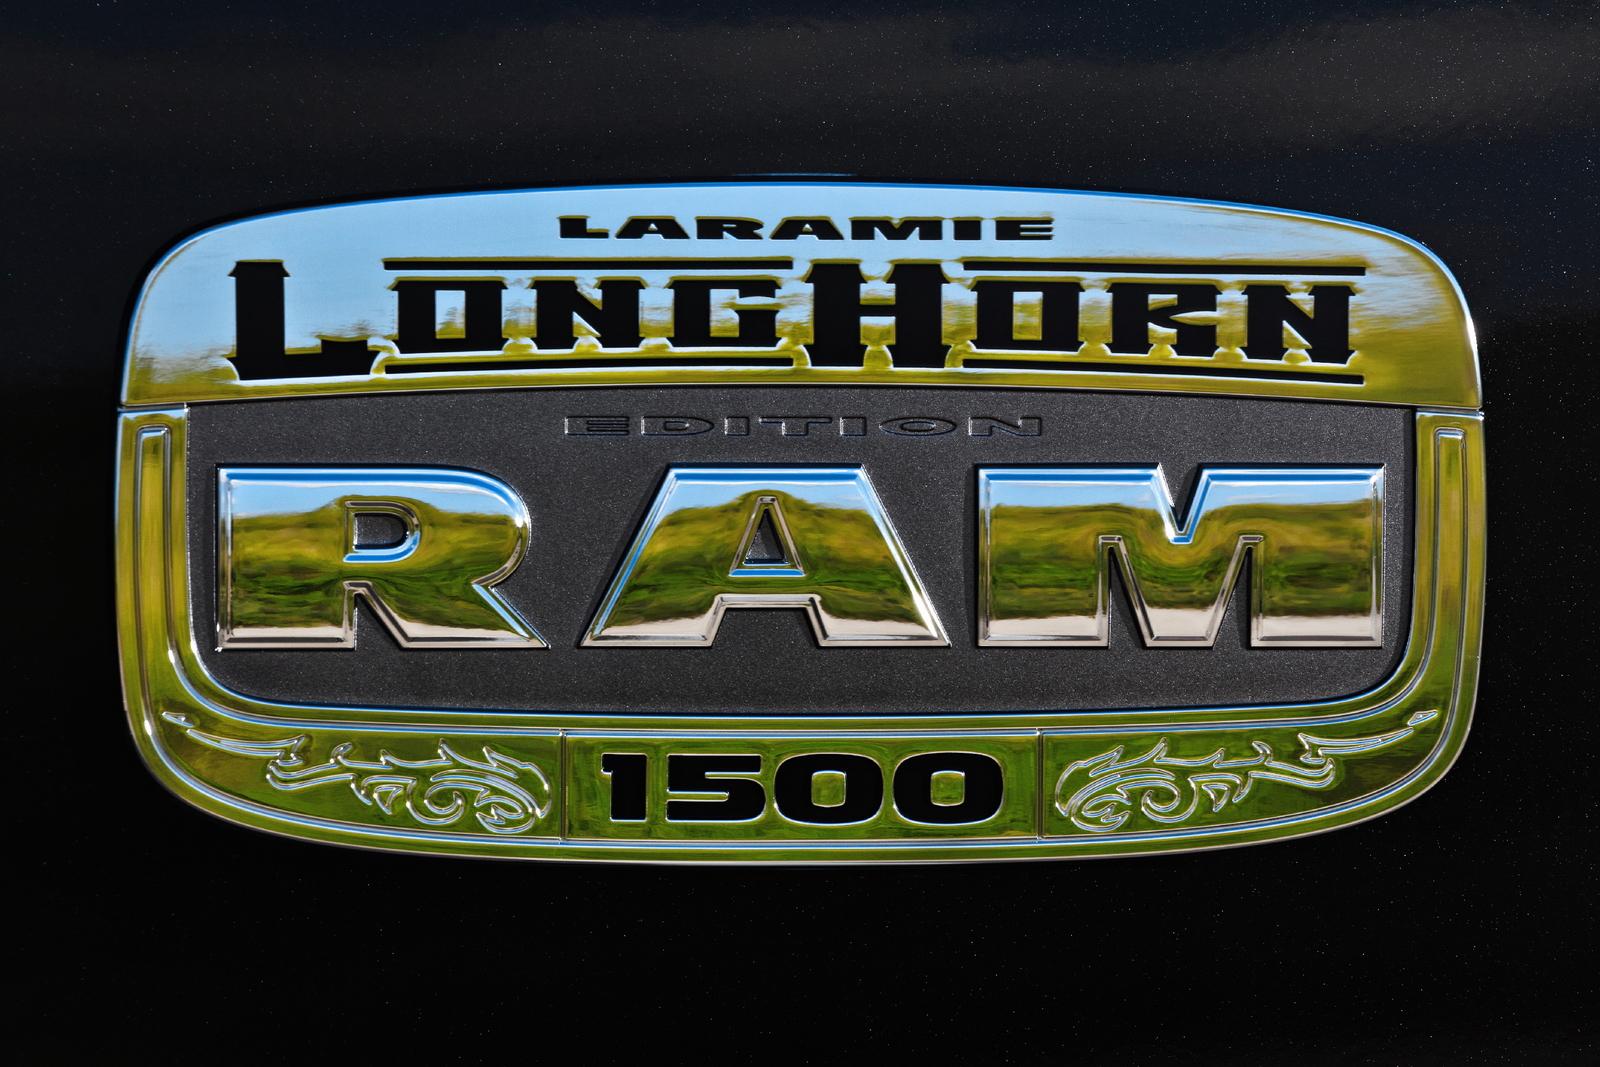 Dodge Ram Laramie Longhorn Edition